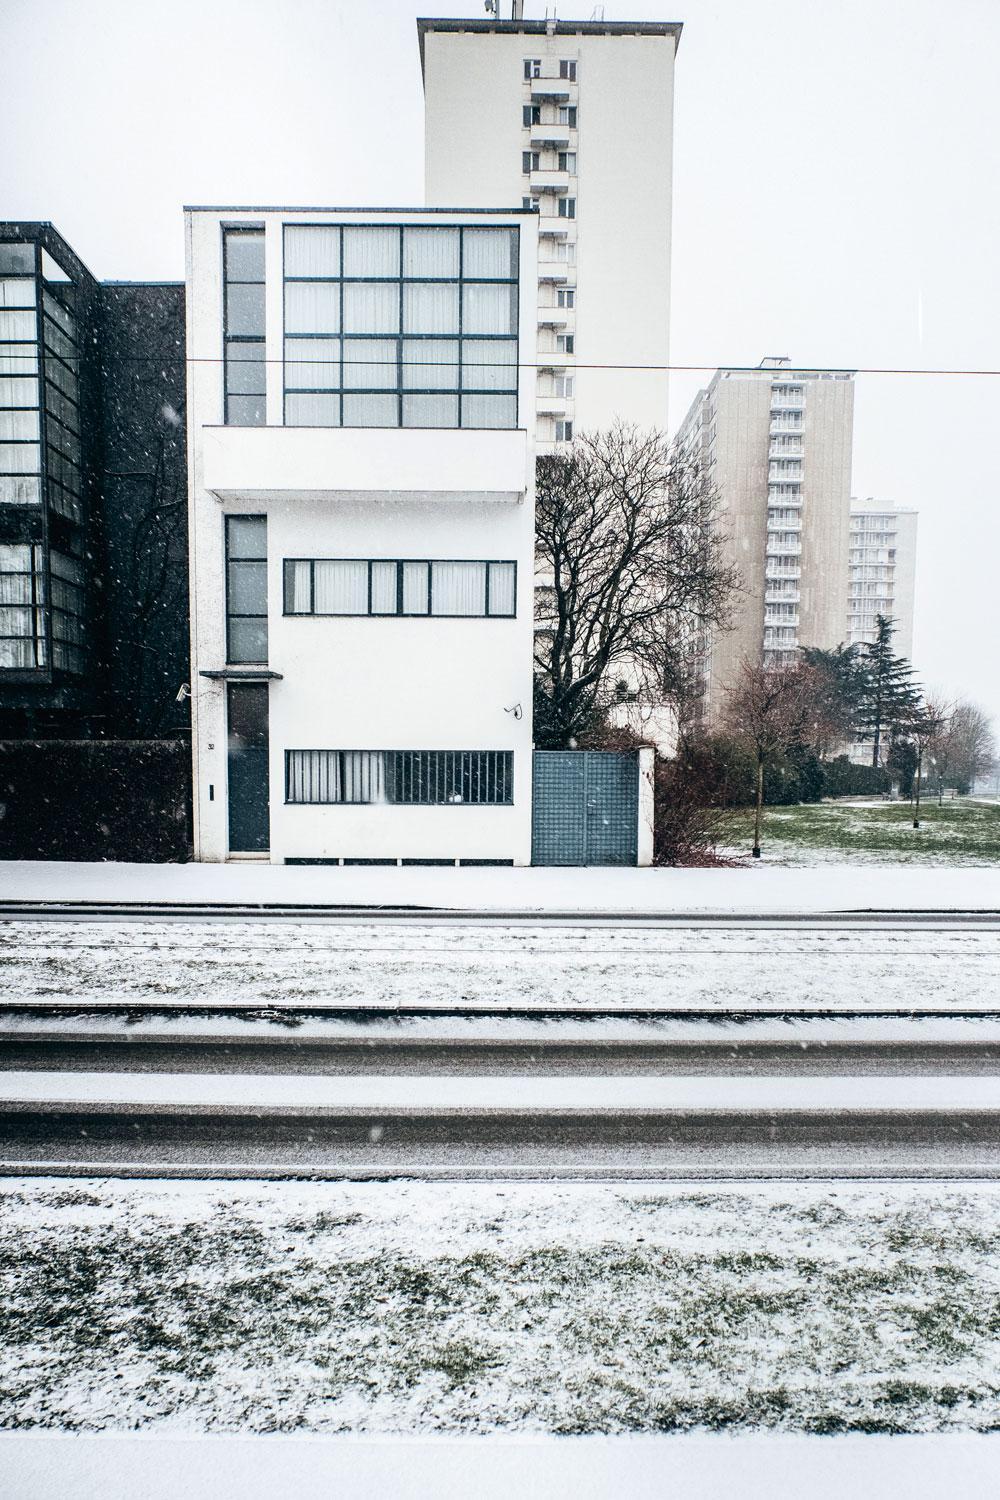 Maison Guiette, een van Natali's favoriete plekken, is het enige Corbusier-huis in België.